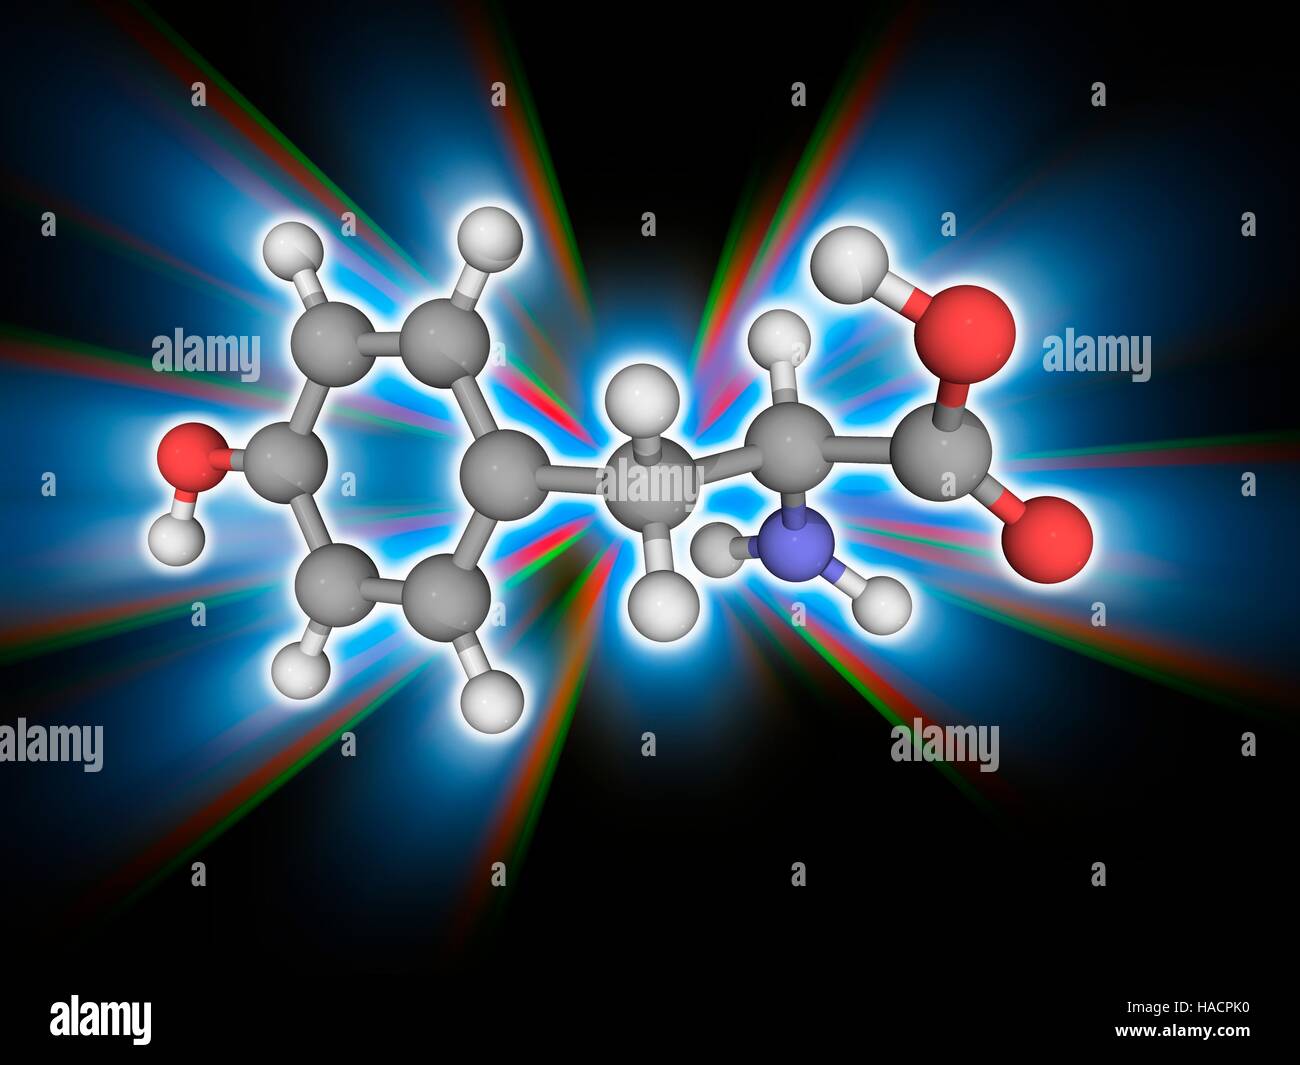 Tirosina. Il modello molecolare di amminoacido non essenziale di tirosina (C9.H11.N.O3), uno dei venti amminoacidi utilizzati per sintetizzare le proteine (proteinogenic). Gli atomi sono rappresentati da sfere e sono codificati a colori: carbonio (grigio), Idrogeno (bianco), Azoto (blu) e ossigeno (rosso). Illustrazione. Foto Stock